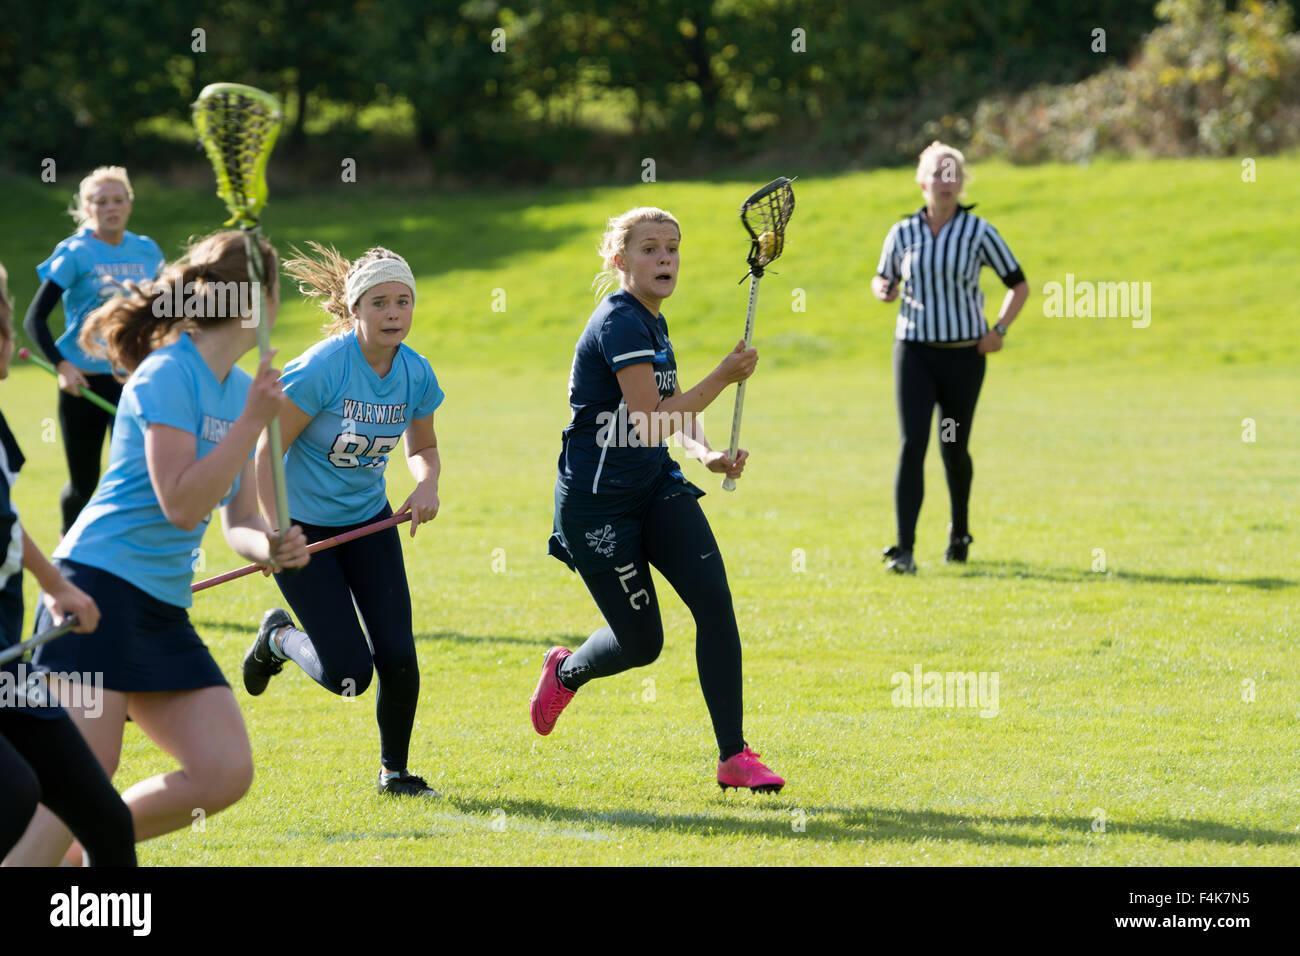 Hochschulsport - Damen-Lacrosse-Spiel an der Universität Warwick, UK Stockfoto